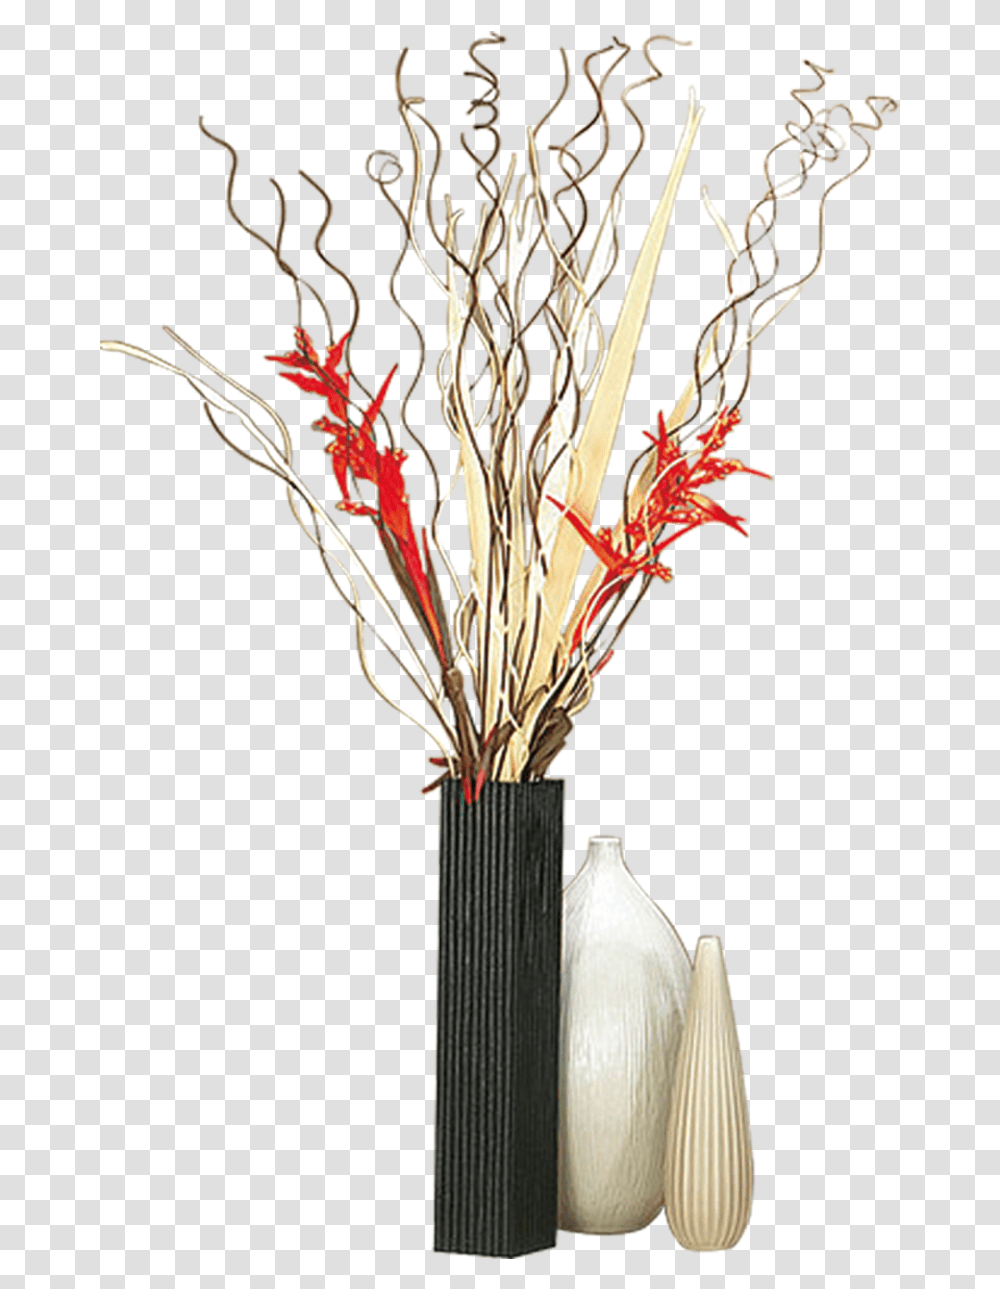 Vase Free Download Tall Flower Vase, Ikebana, Art, Ornament, Flower Arrangement Transparent Png